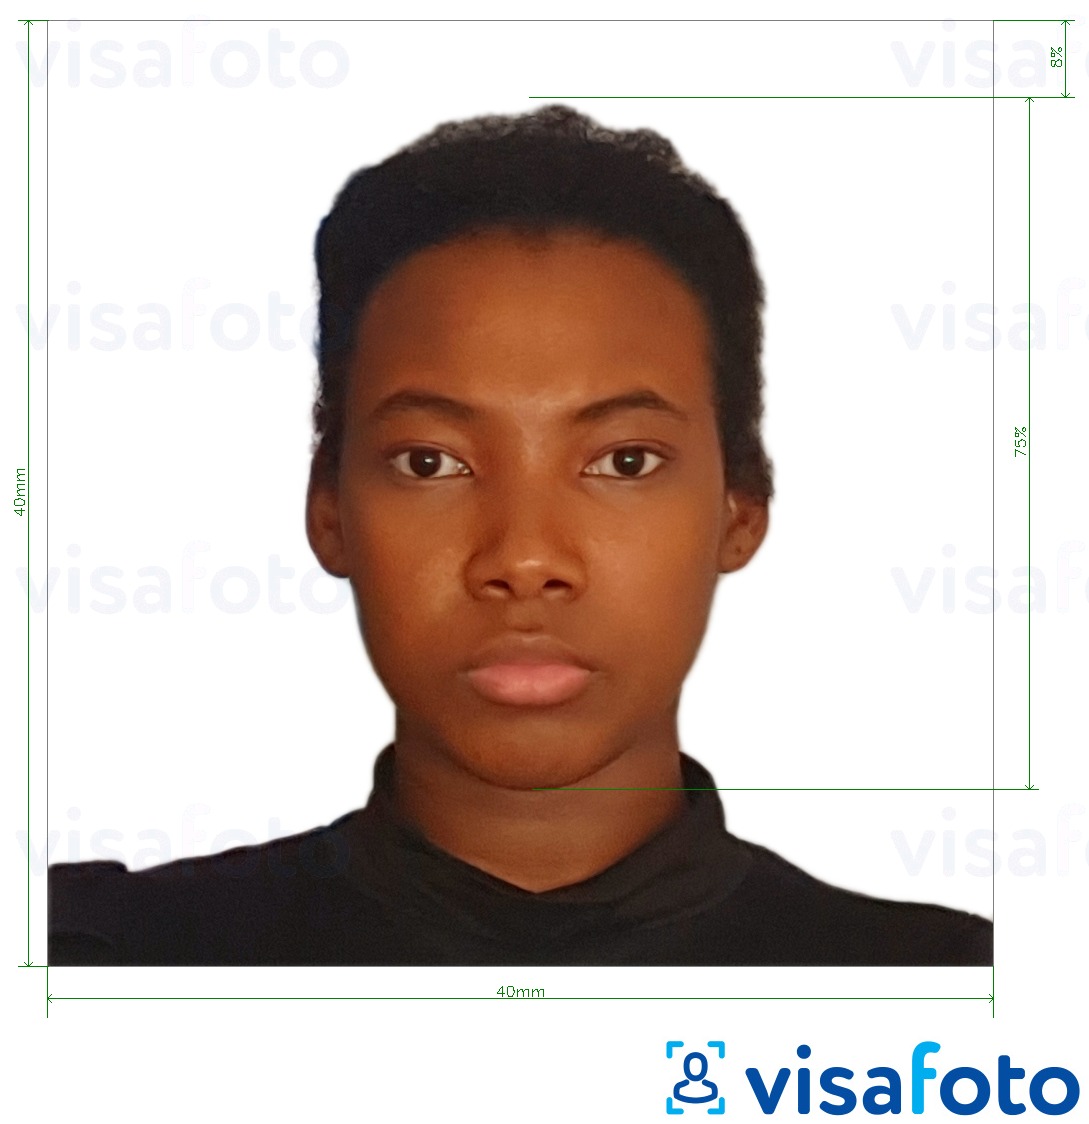 Příklad fotografie Kamerunský pas 4x4 cm (40x40 mm) s přesnou specifikací velikosti